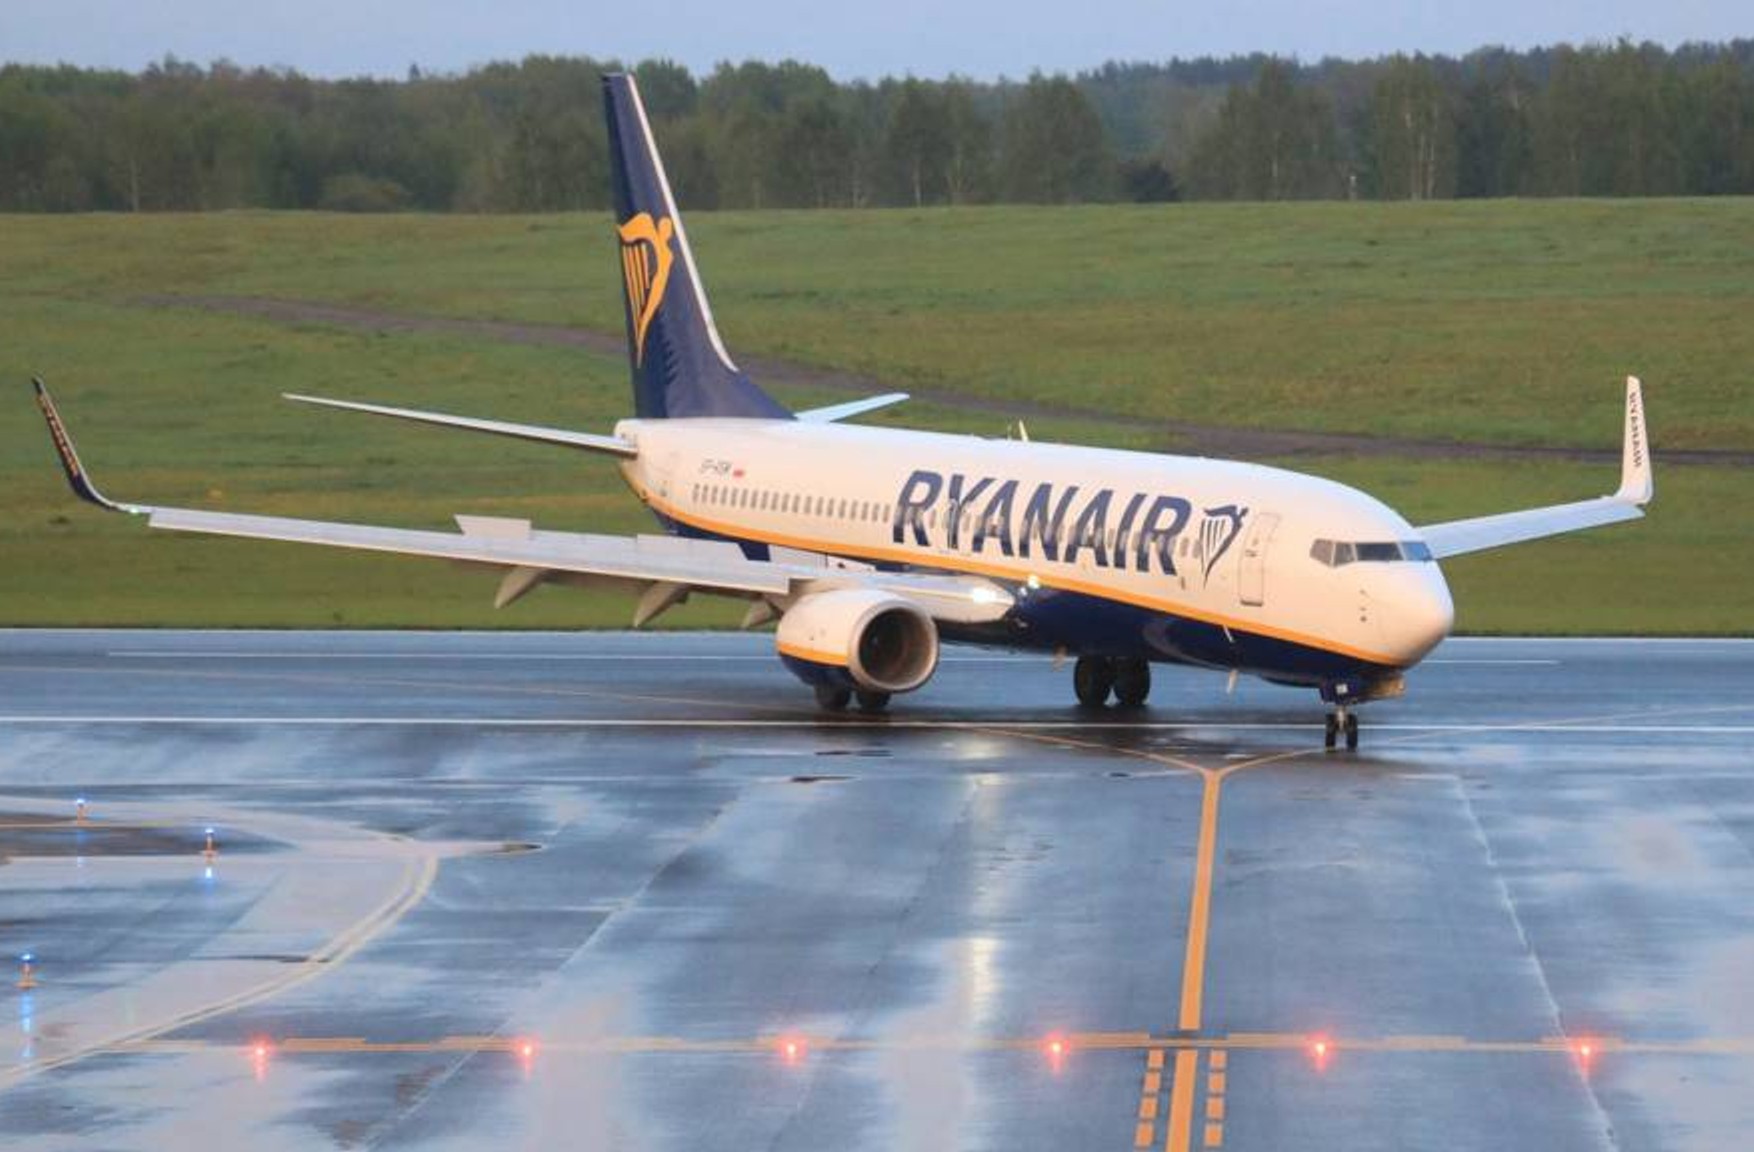 Посадка літака Ryanair в Мінську - це незаконний і навмисний викрадення - глава авіакомпанії звернувся до білоруського Мінтрансу